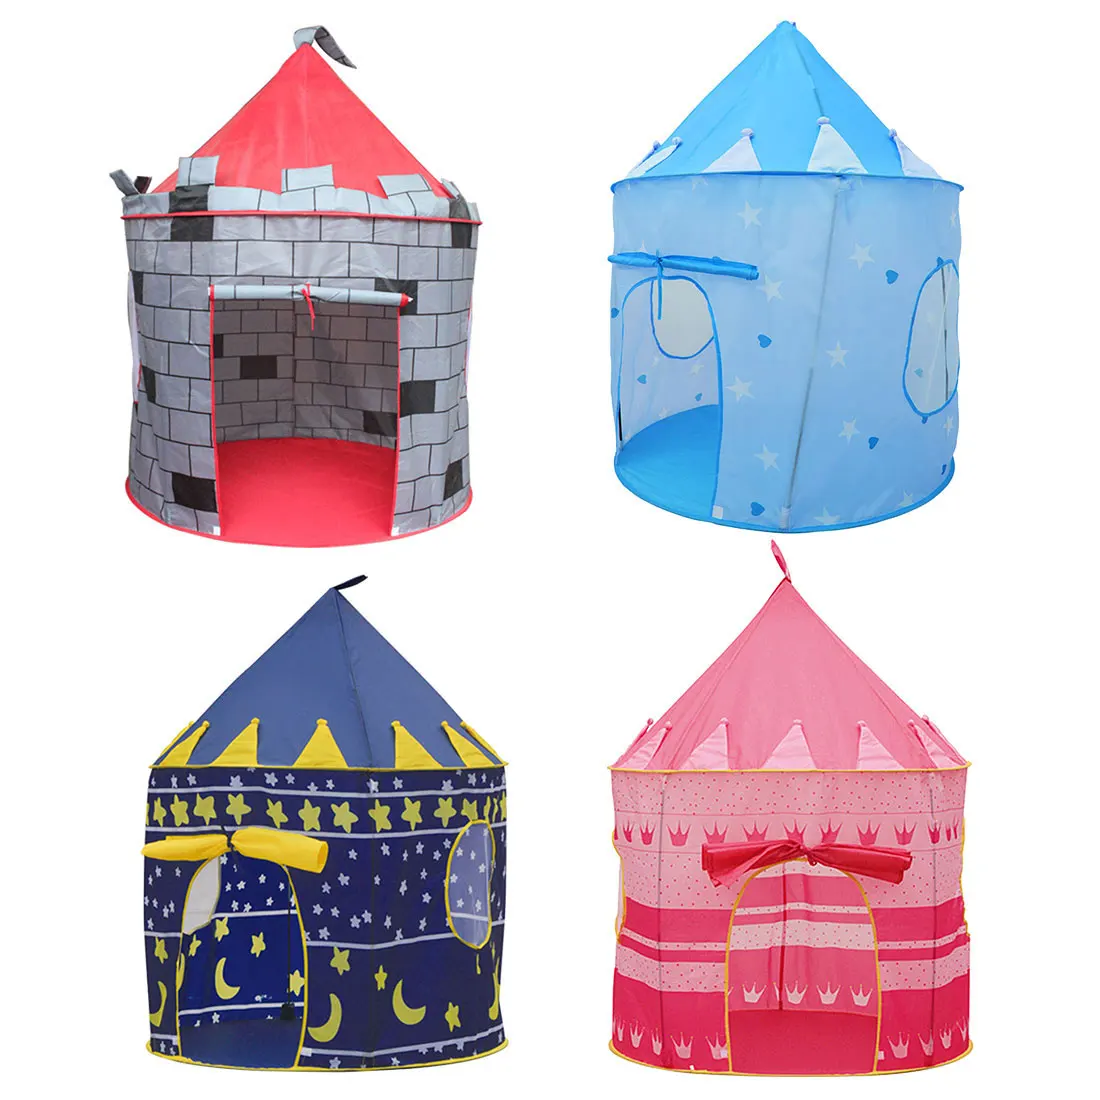 4 цвета, Игровая палатка, портативная складная палатка Tipi Prince, складная палатка для мальчиков, замок, игровой домик, детские подарки, уличные игрушечные палатки